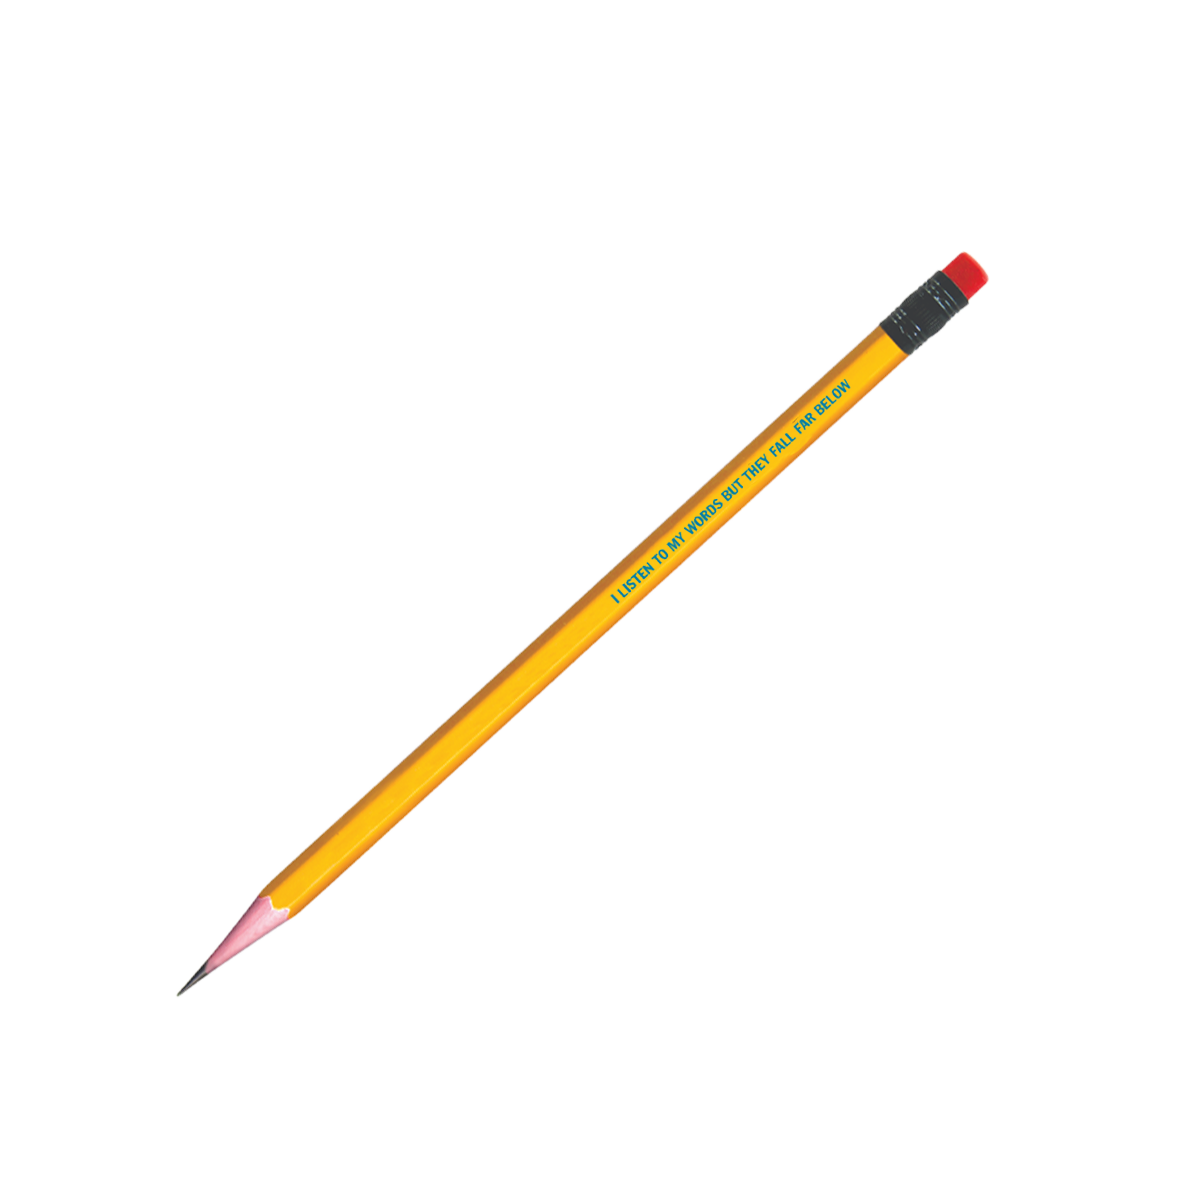 Firecat Pencil